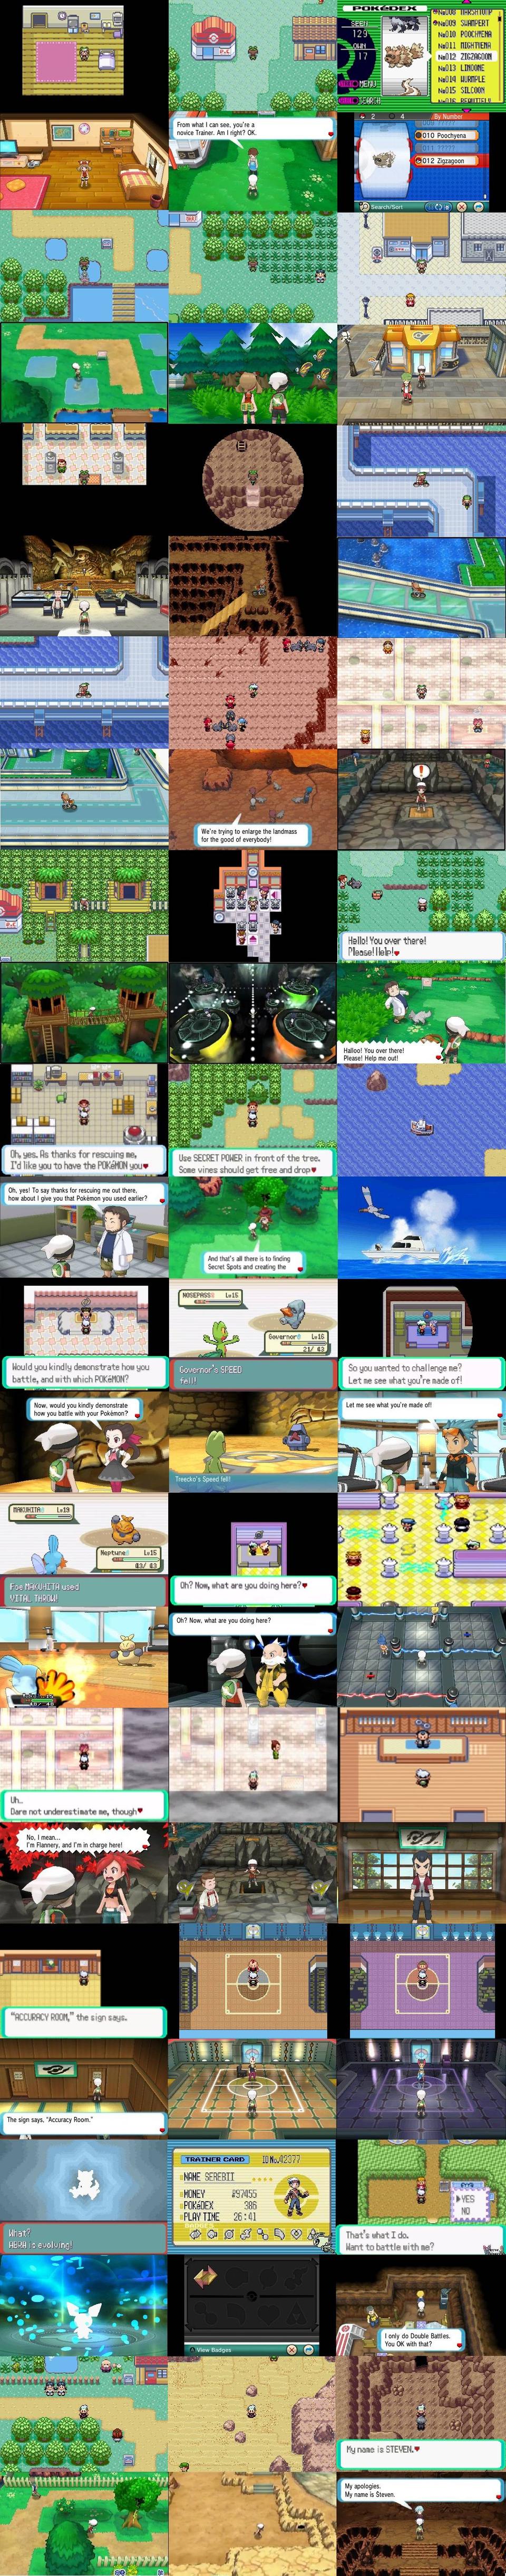 Pokemon thay đổi như thế nào sau một thập kỉ?